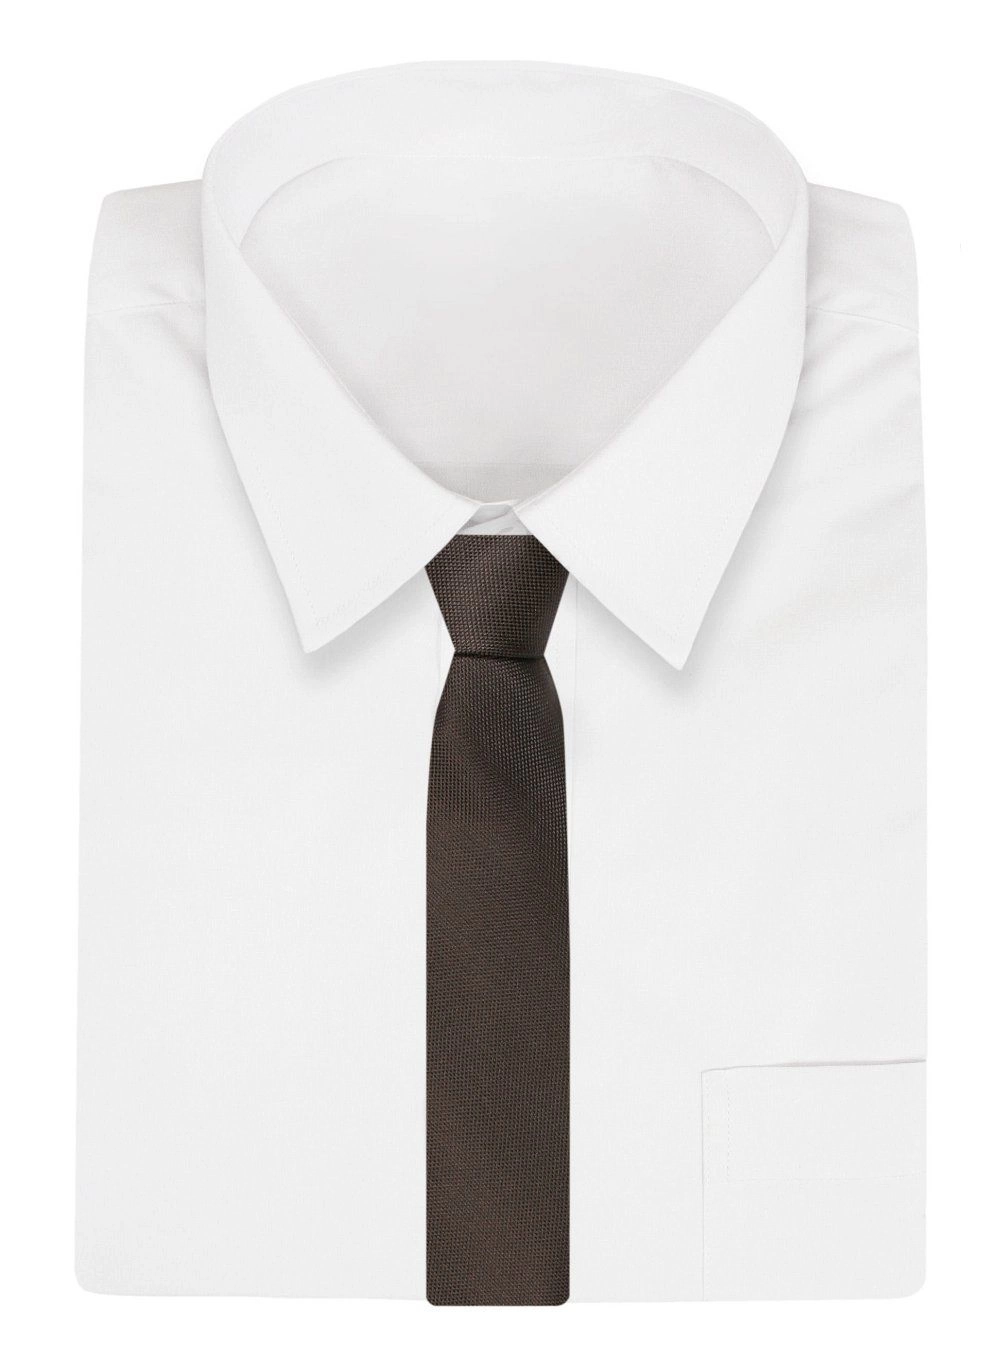 Krawat Klasyczny, Brązowy w Drobny Rzucik, Męski, Szeroki 8 cm, Elegancki -CHATTIER